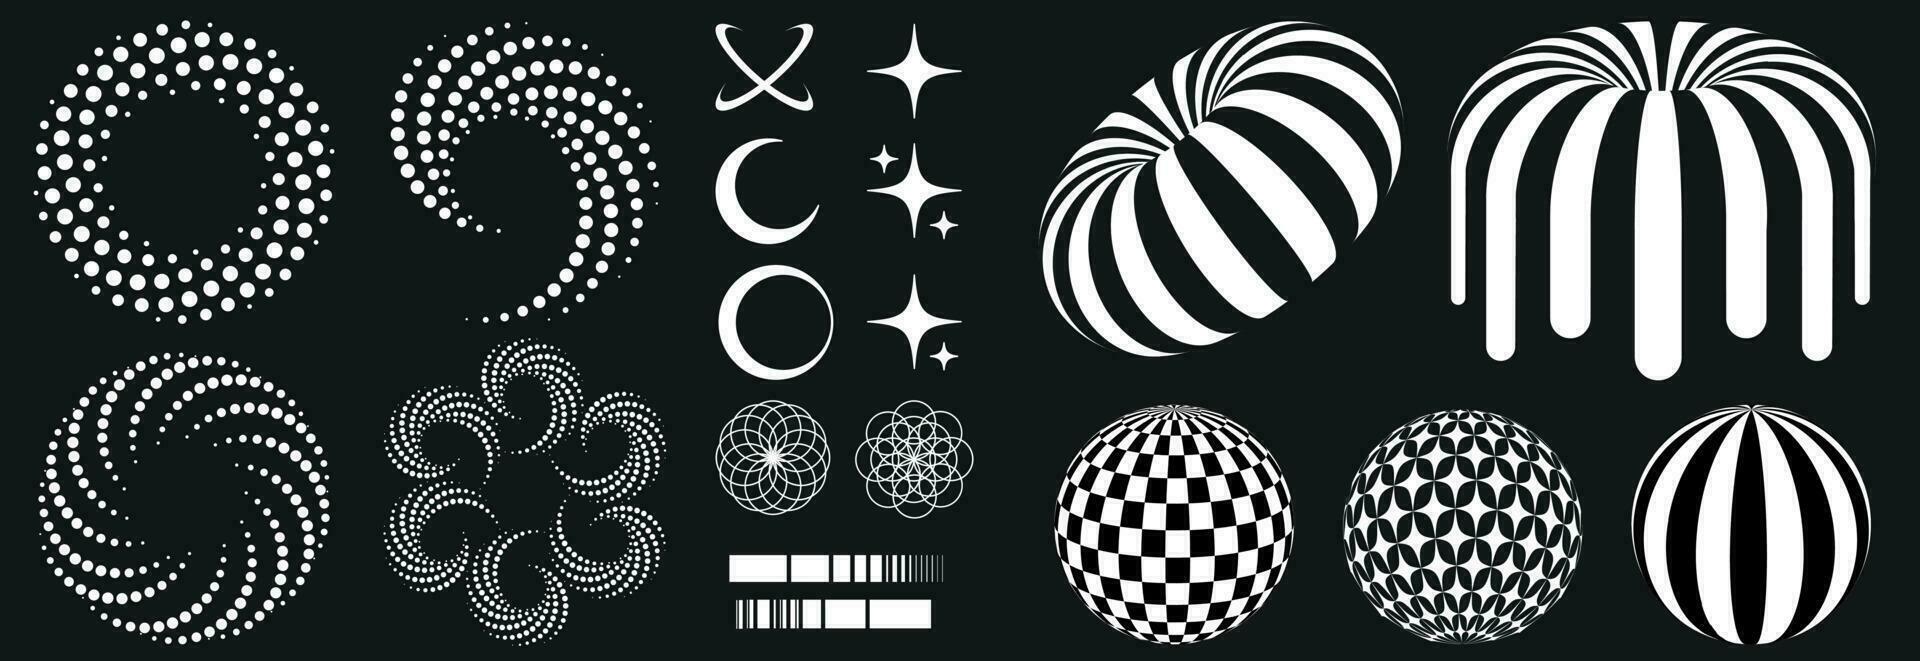 einstellen im retro psychedelisch Stil von das 2000er mit Elemente und geometrisch Formen Muster, Zebra Krapfen. surreal Kreise, Sterne, Bälle. vektor